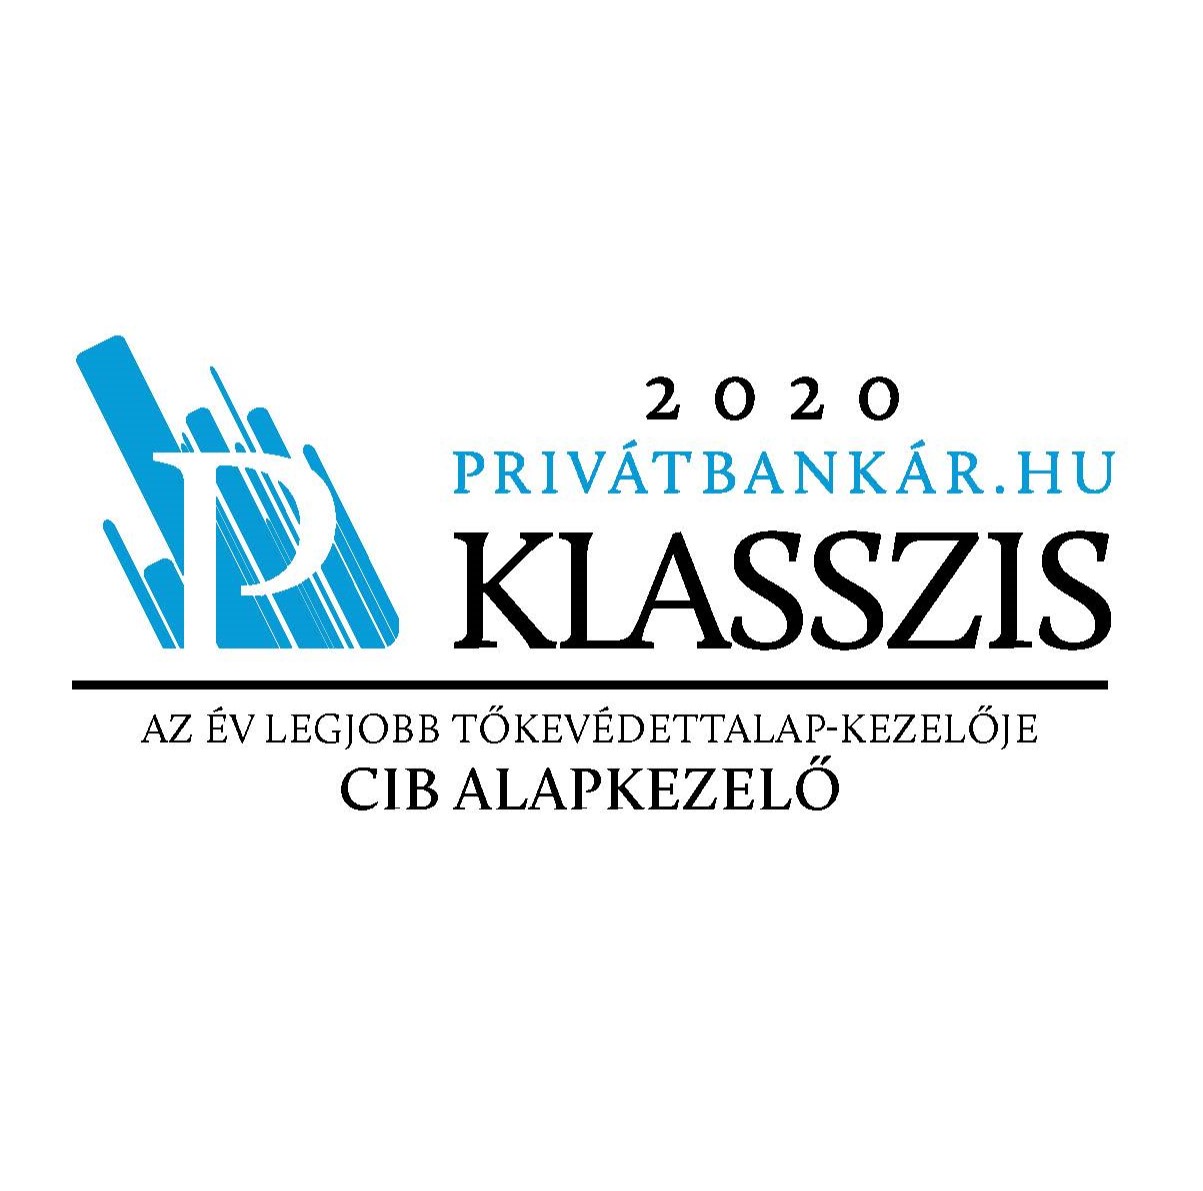 Privátbankár klasszis díj 2020 - az év legjobb tőkevédett alapkezelője Eurizon Alapkezelő